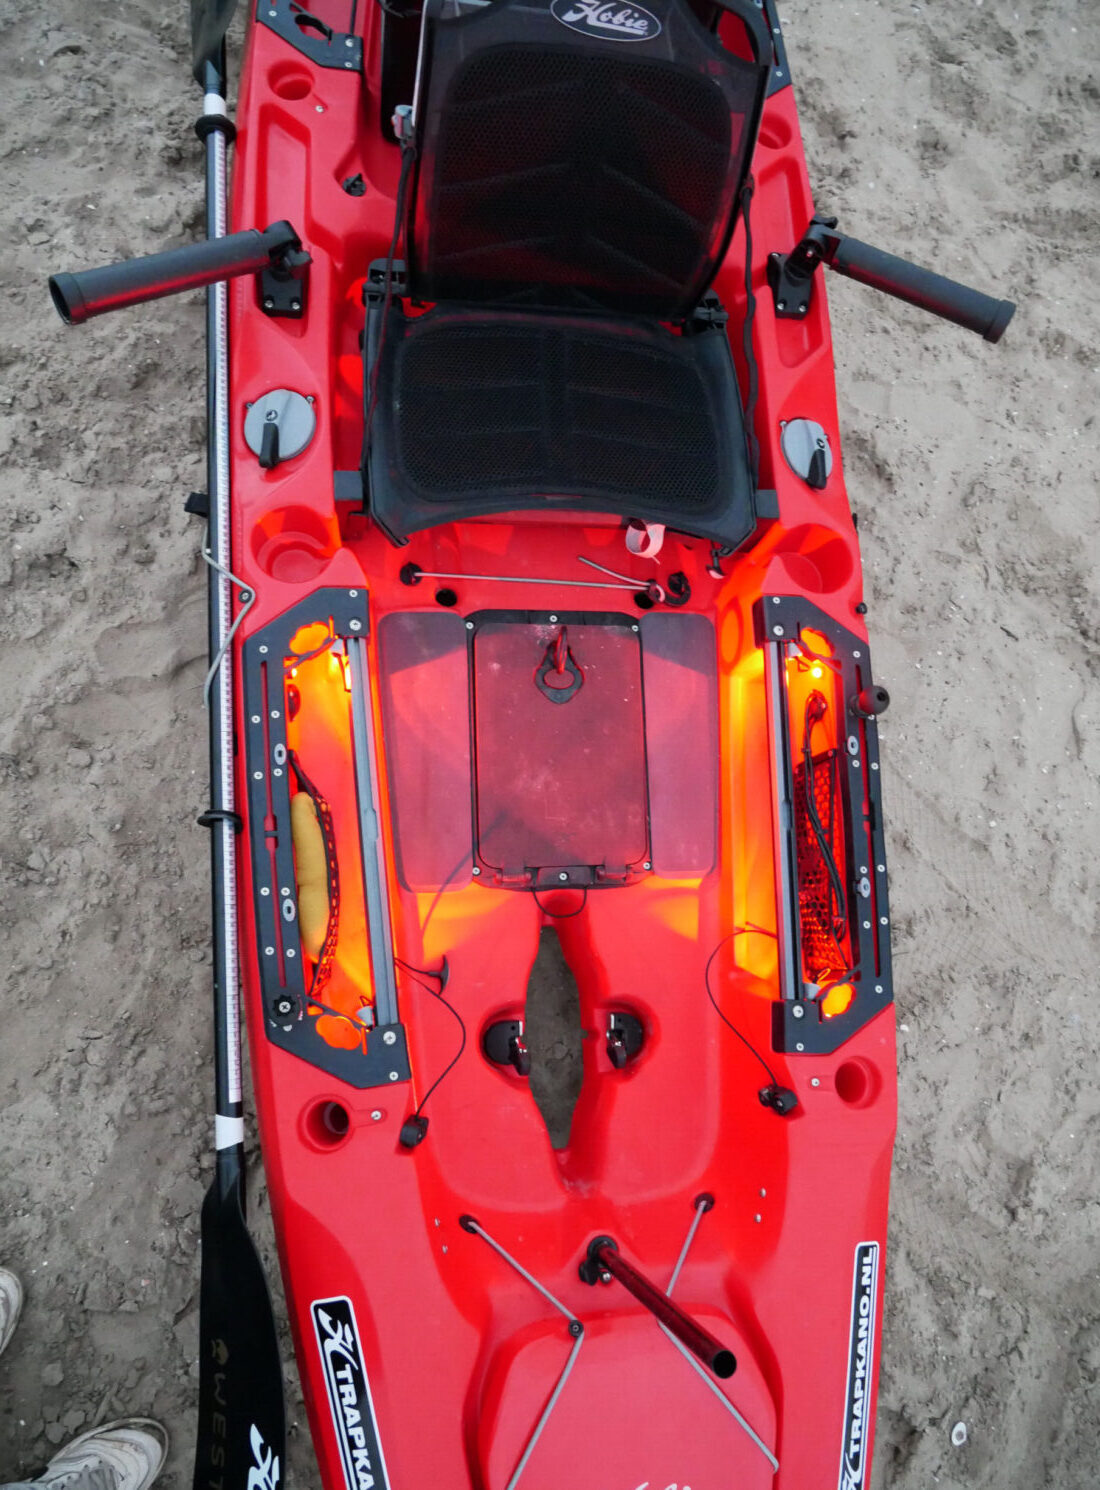 hengelsteun-installeren-hobie-kayak